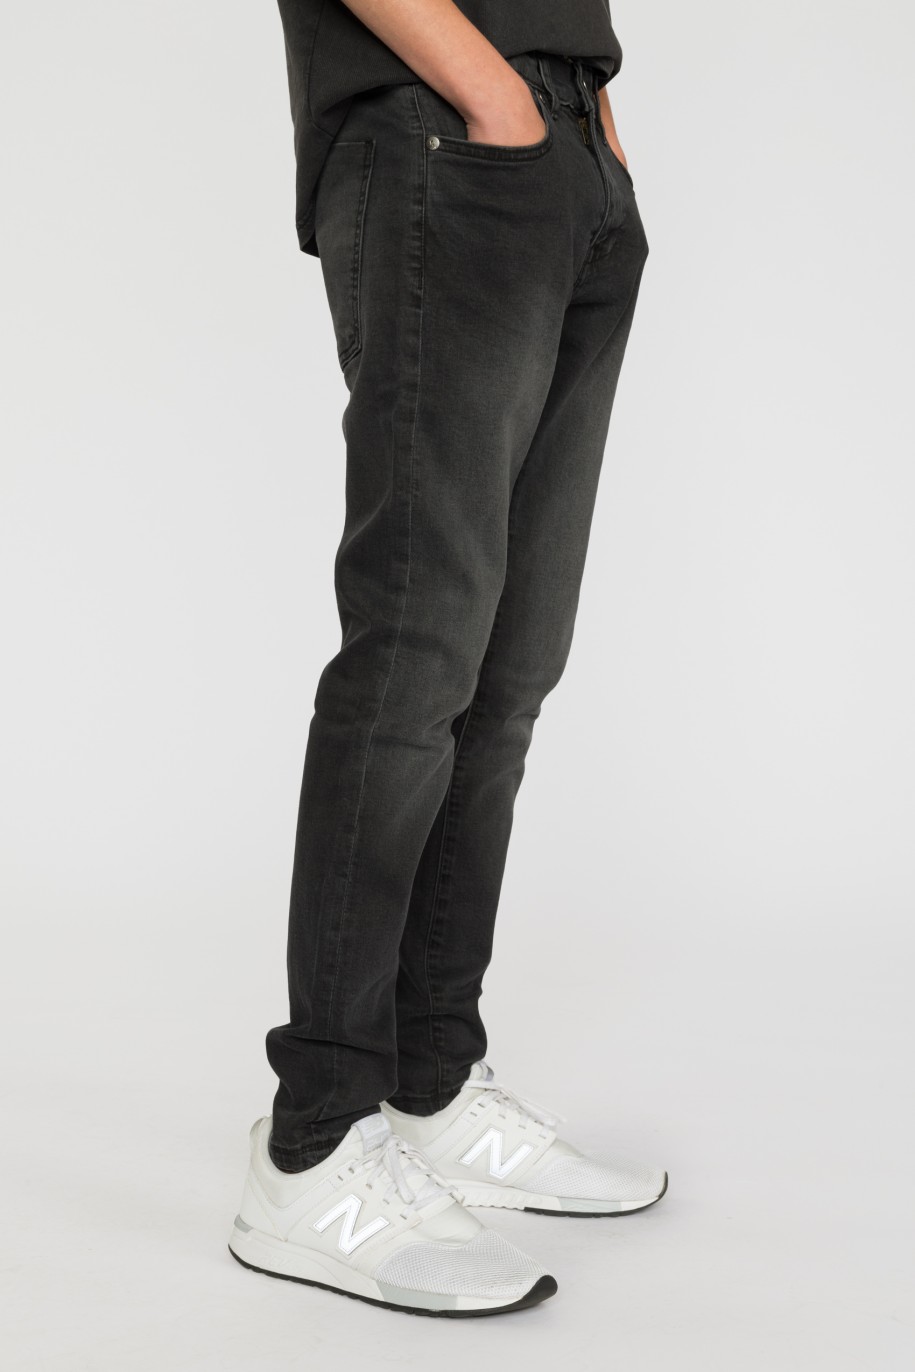 Czarne proste jeansowe spodnie dla chłopaka - 33449